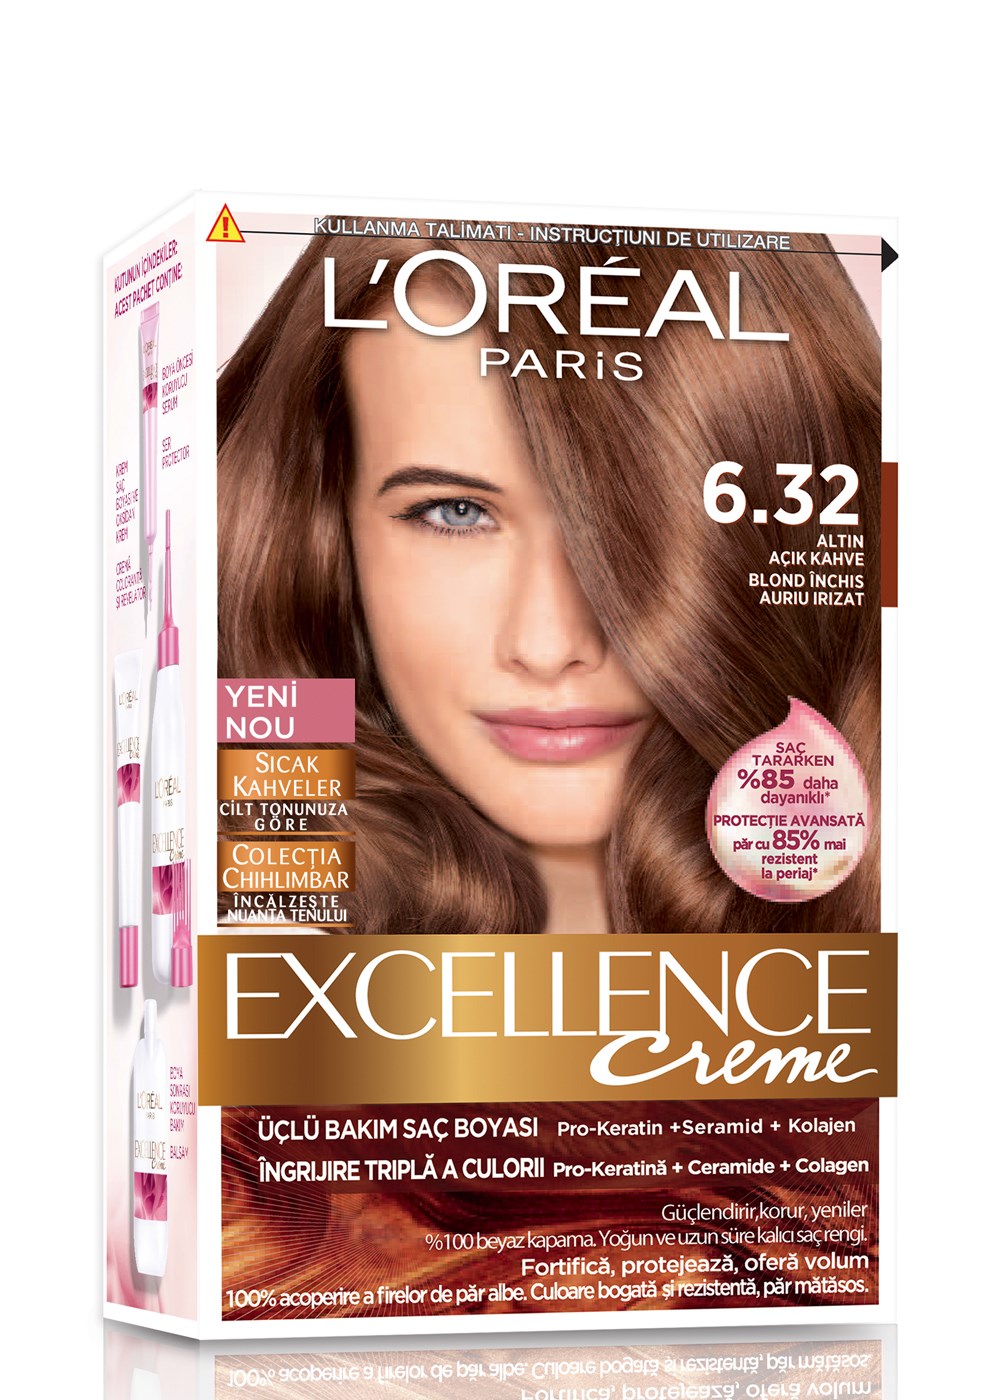 Loreal Paris Saç Boyası Excellence creme 6.32 Altın Acık Kahve | Netegir.com